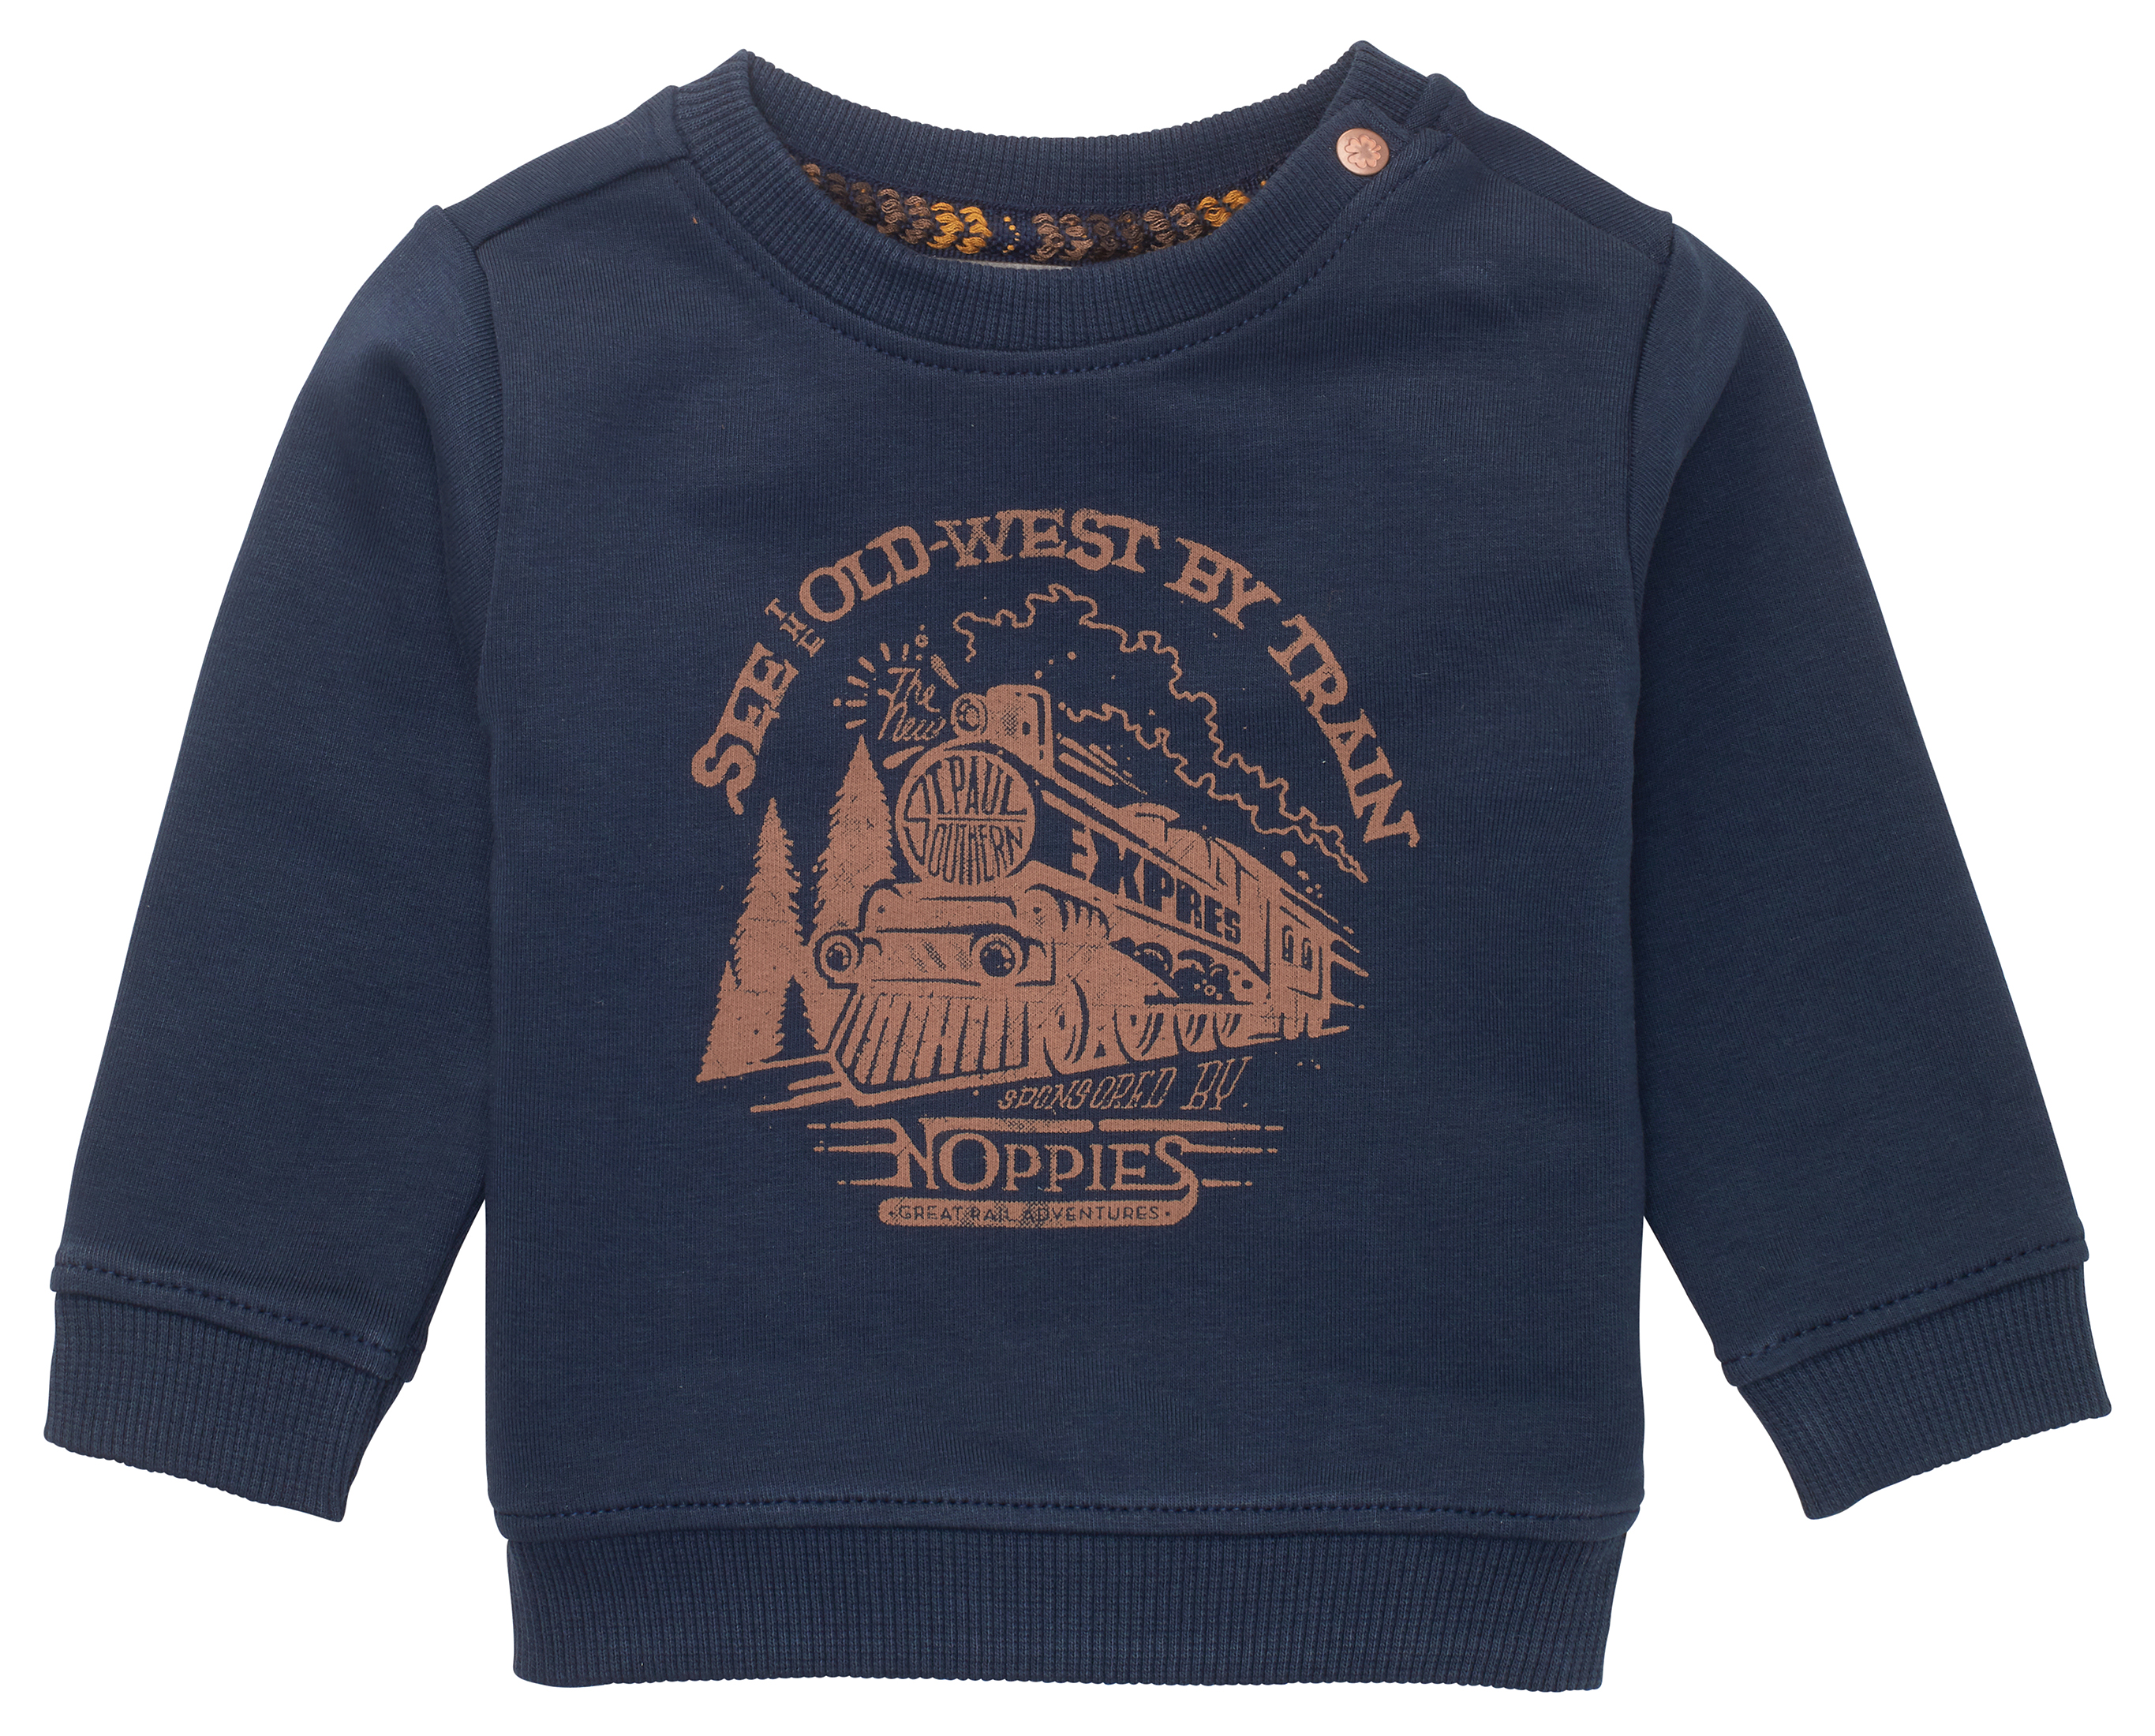 Kleding Unisex kinderkleding Unisex babykleding Sweaters Baby/Toddler Train Track Pullover Sweater 